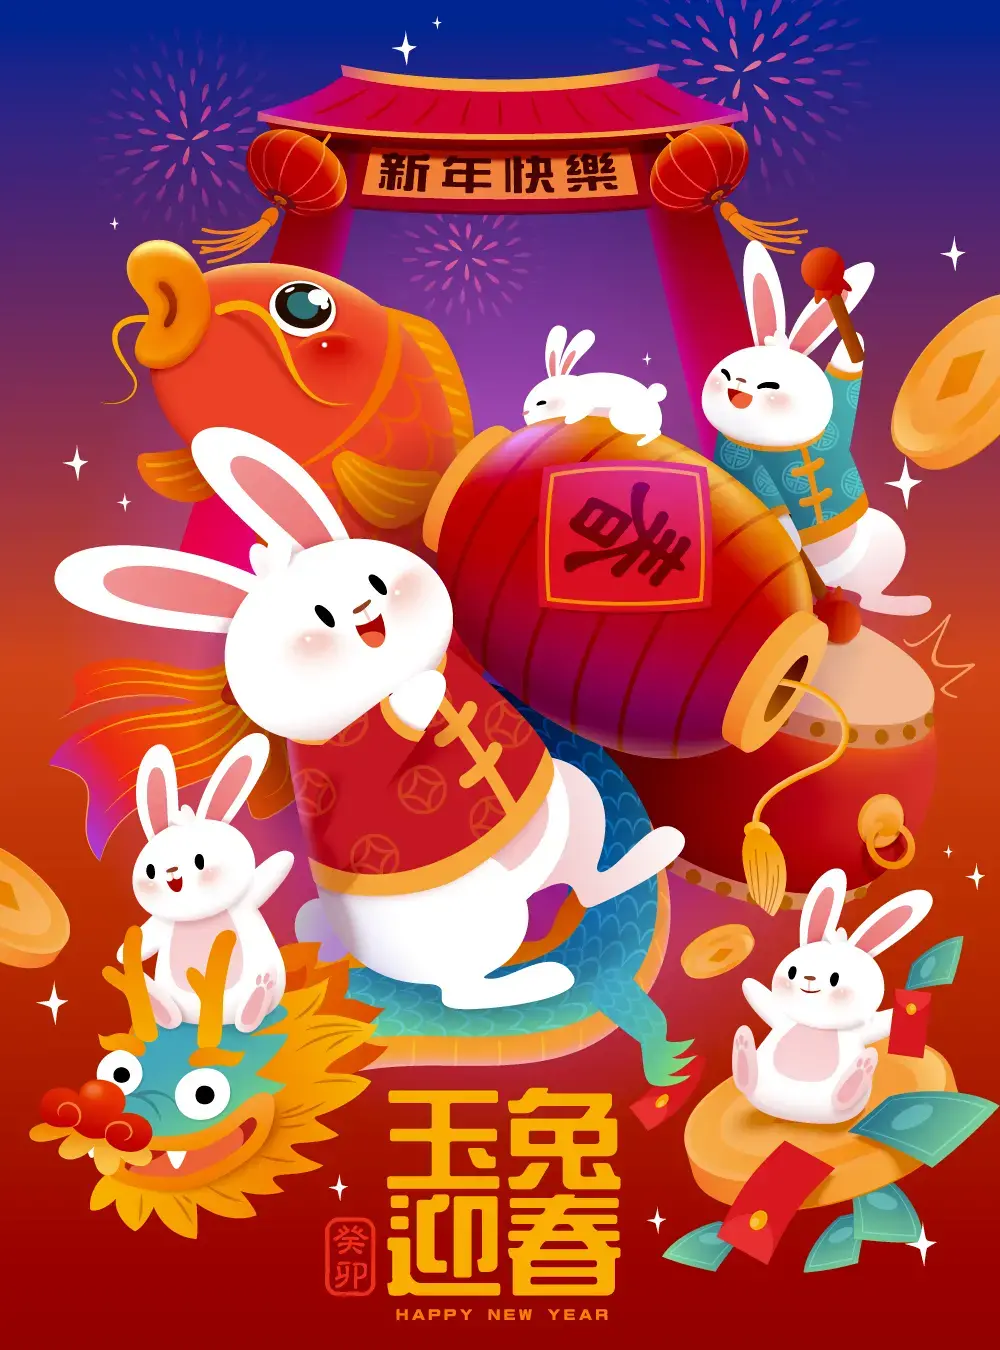 2023兔年喜庆新年春节节日活动促销海报插画模板AI矢量设计素材图-爱设计爱分享c